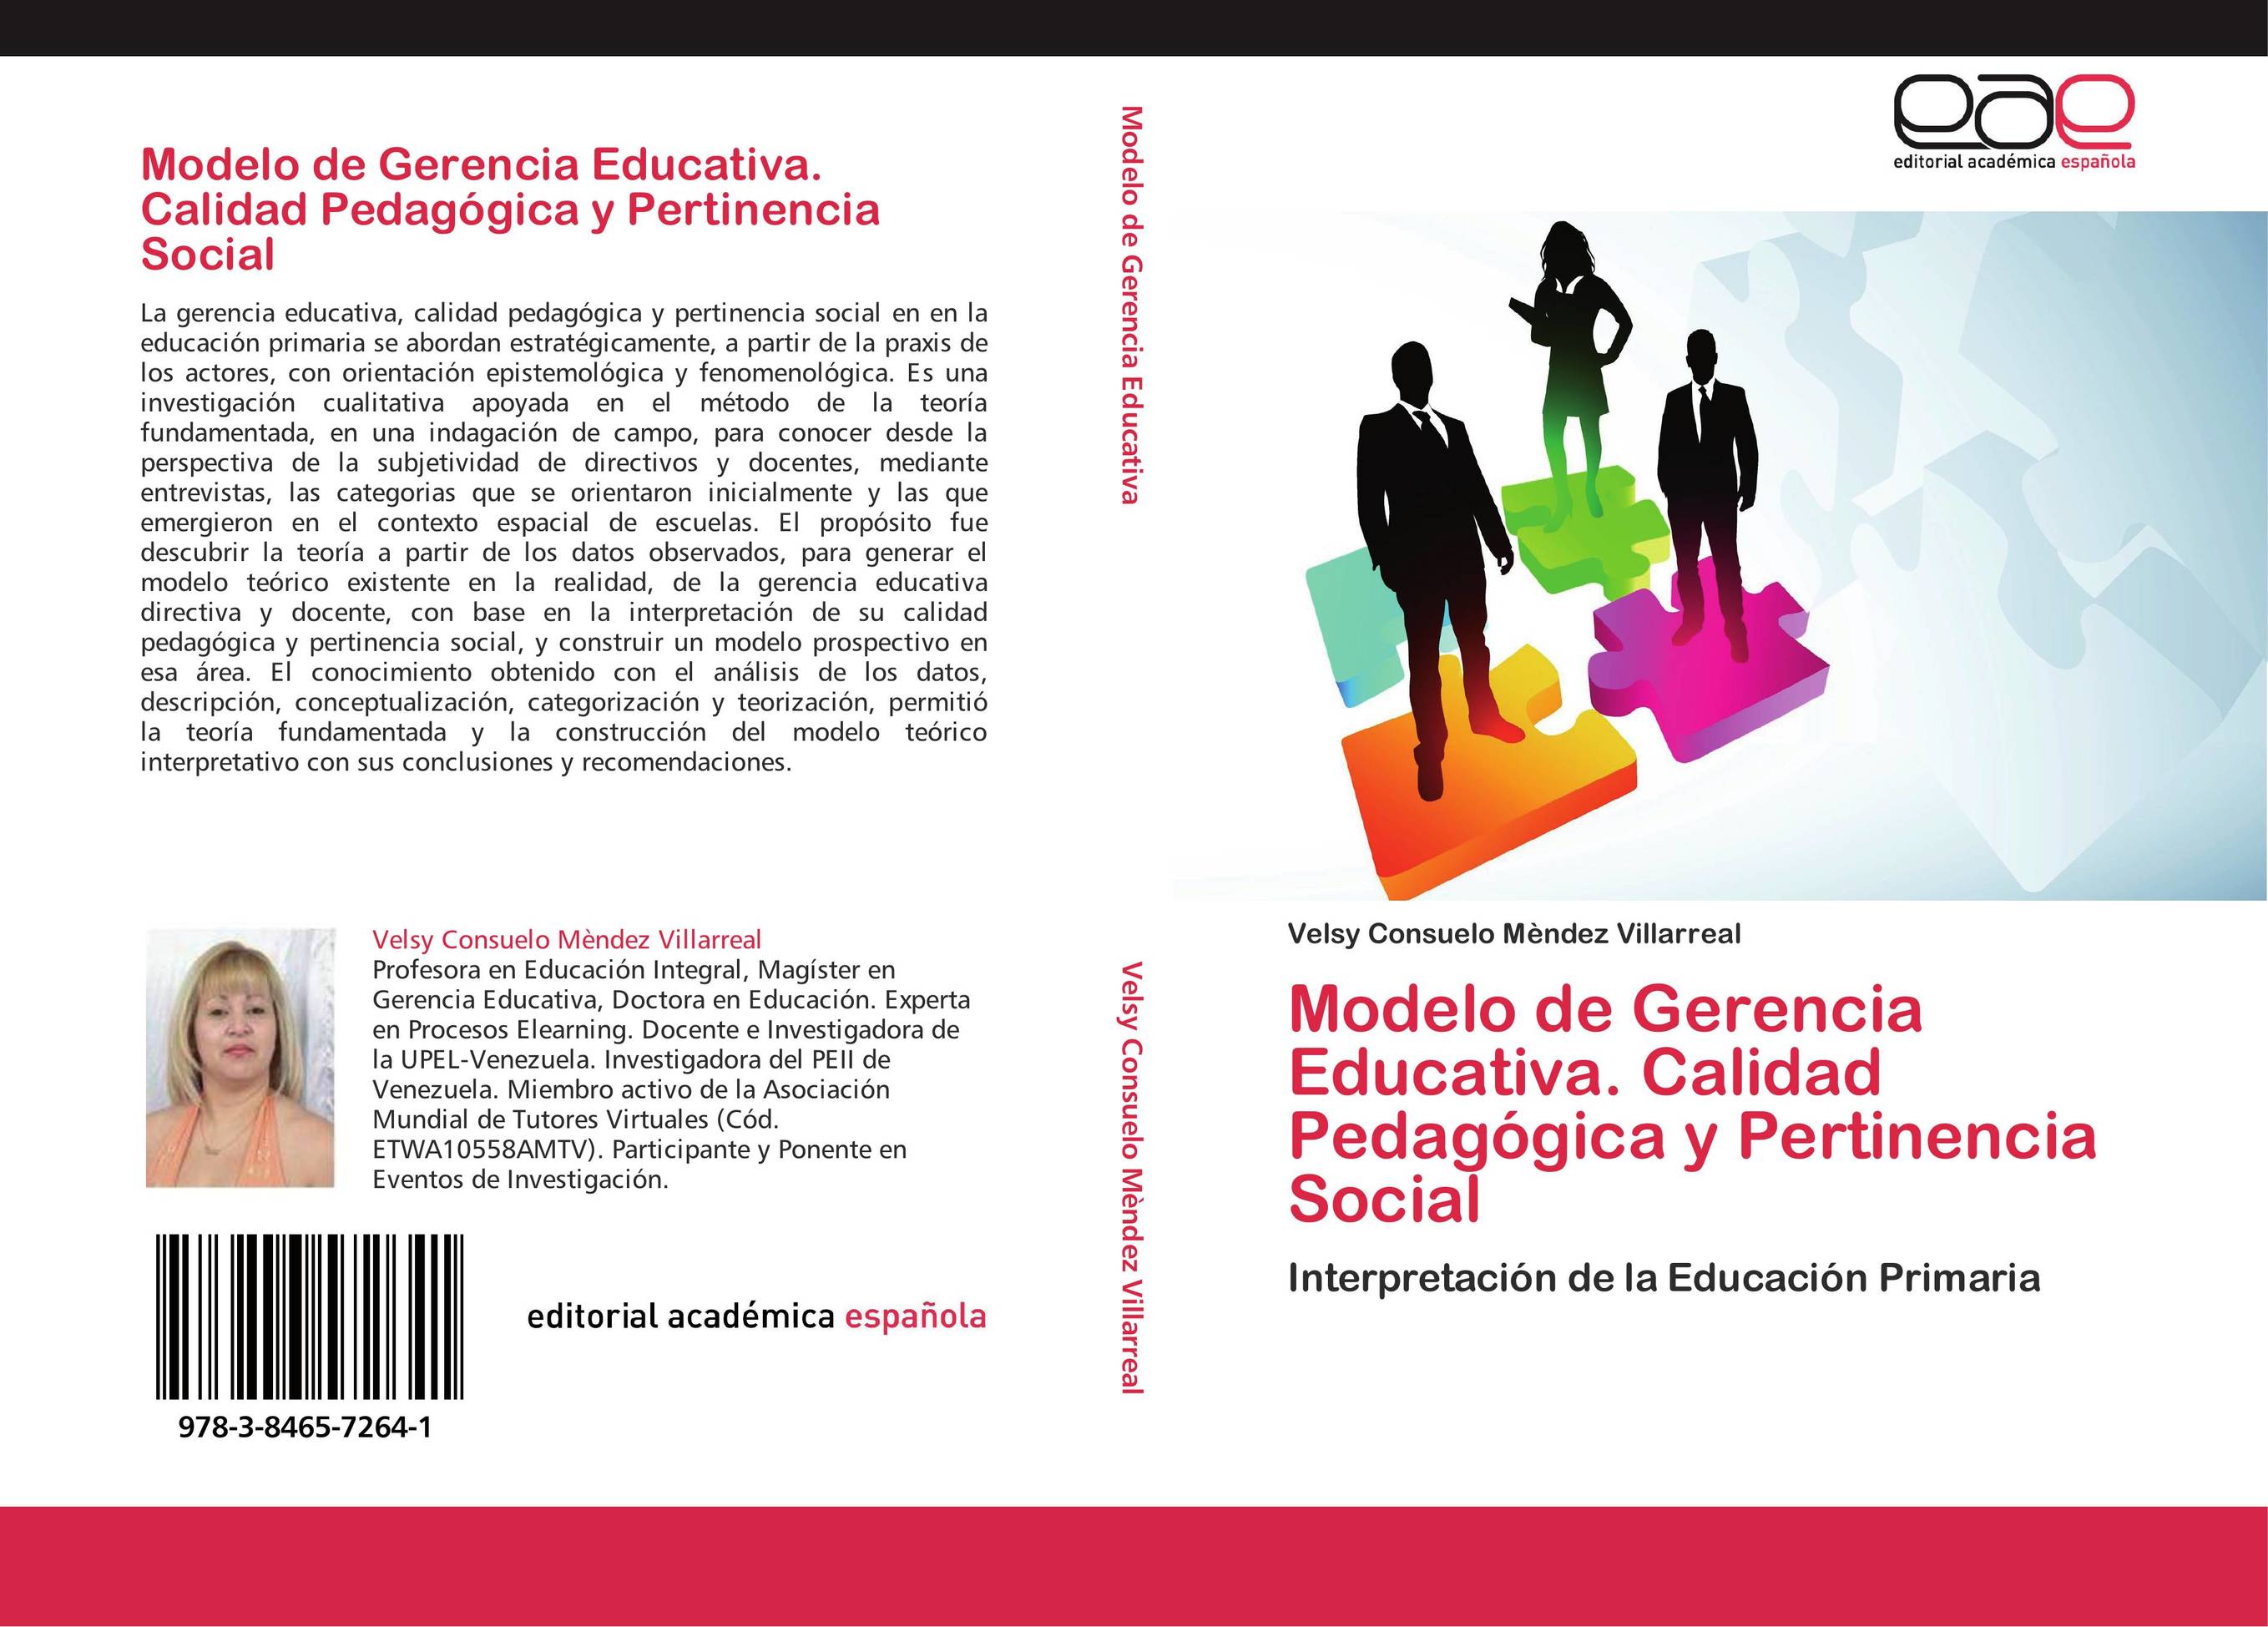 Modelo de Gerencia Educativa. Calidad Pedagógica y Pertinencia Social